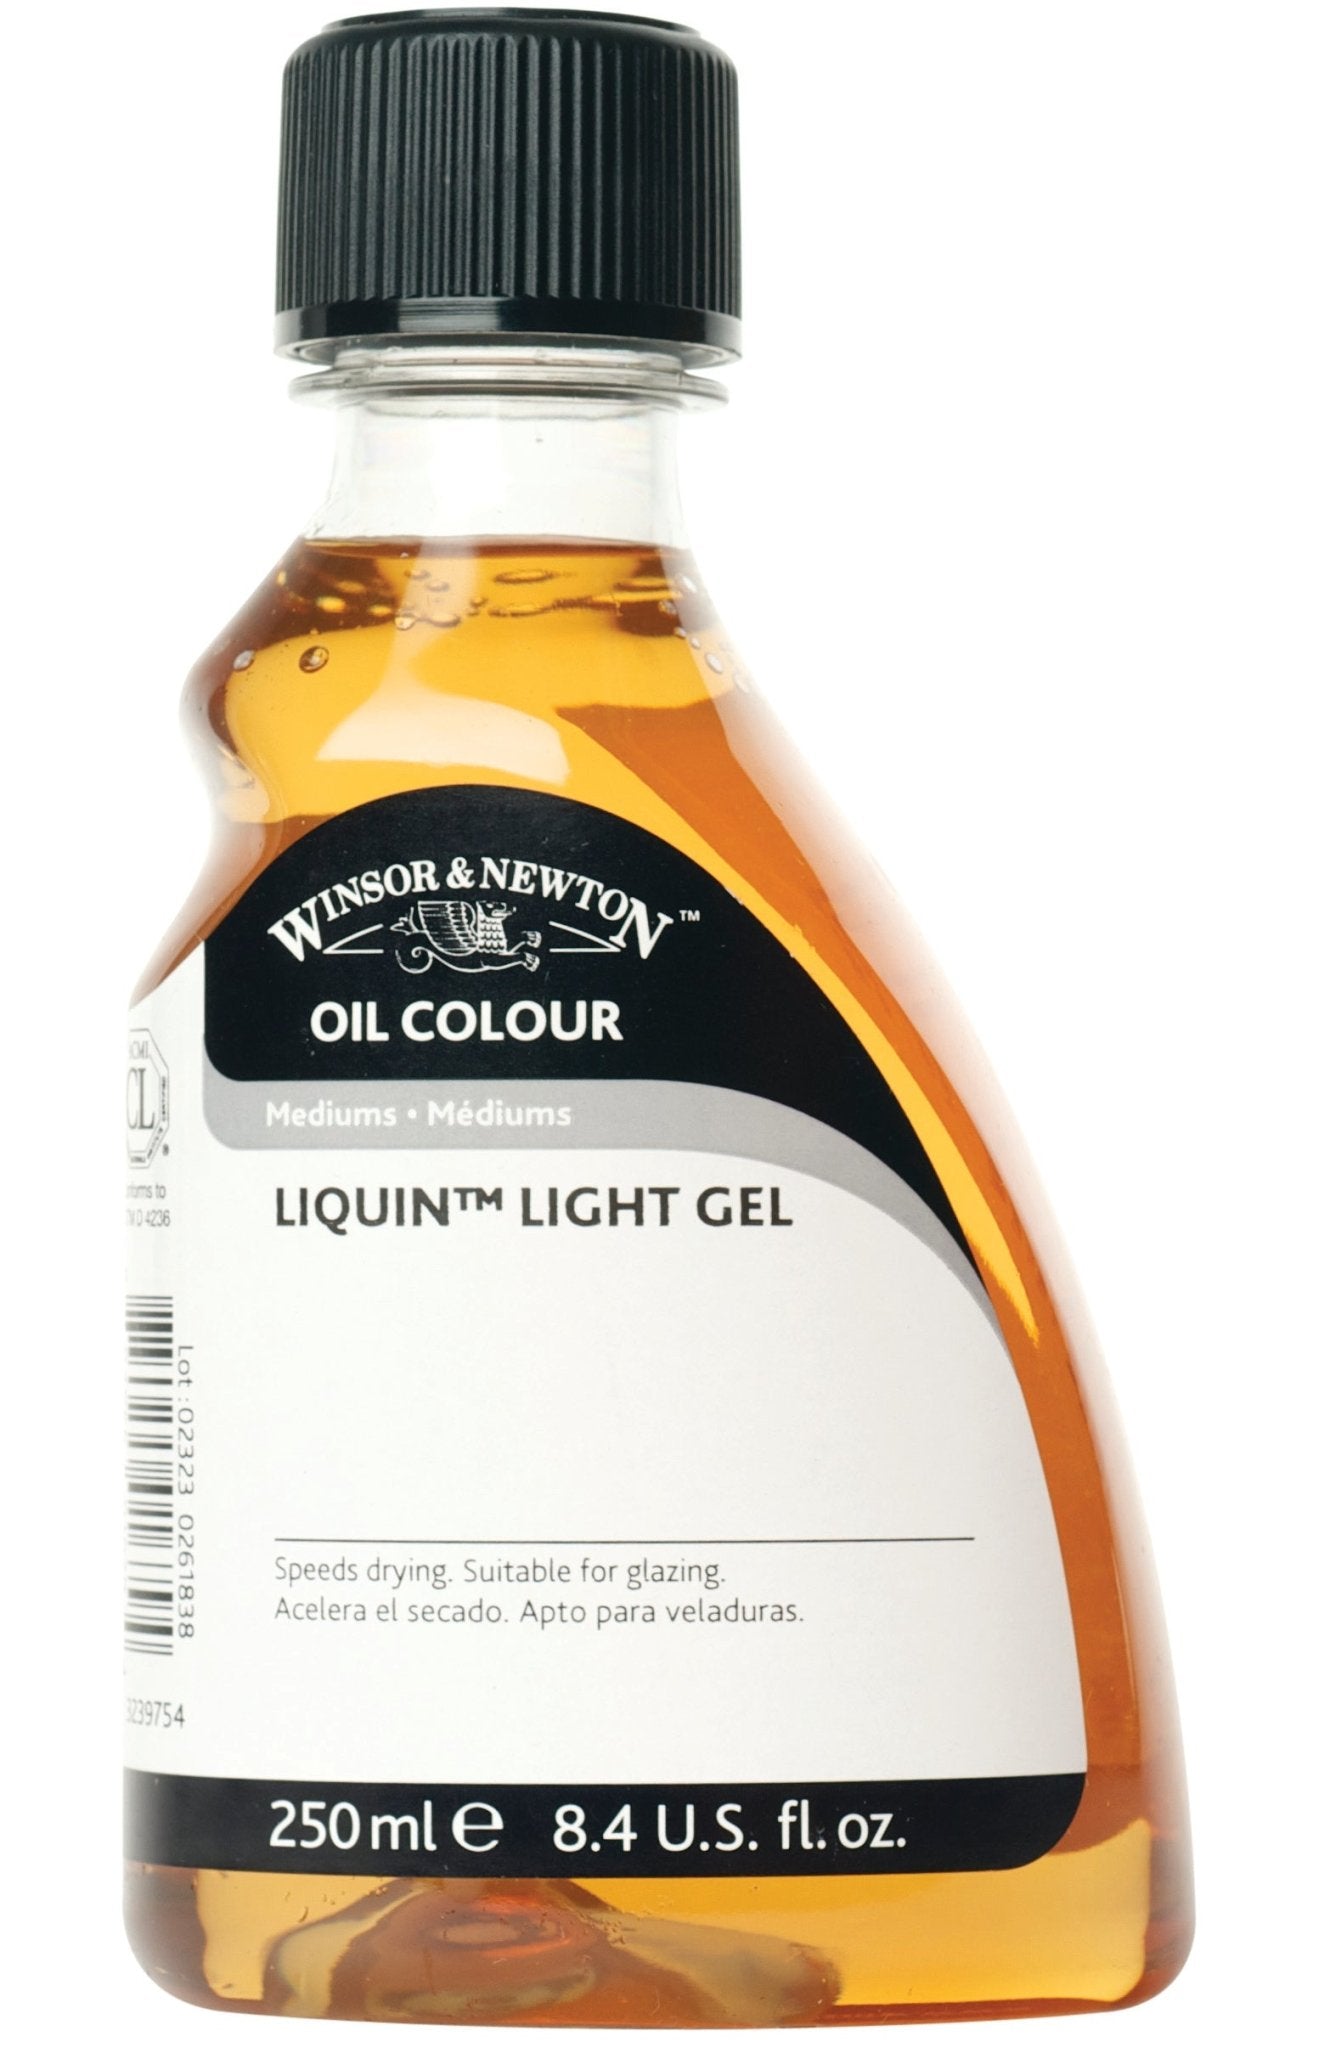 W & N Liquin Light Gel 250ml - theartshop.com.au